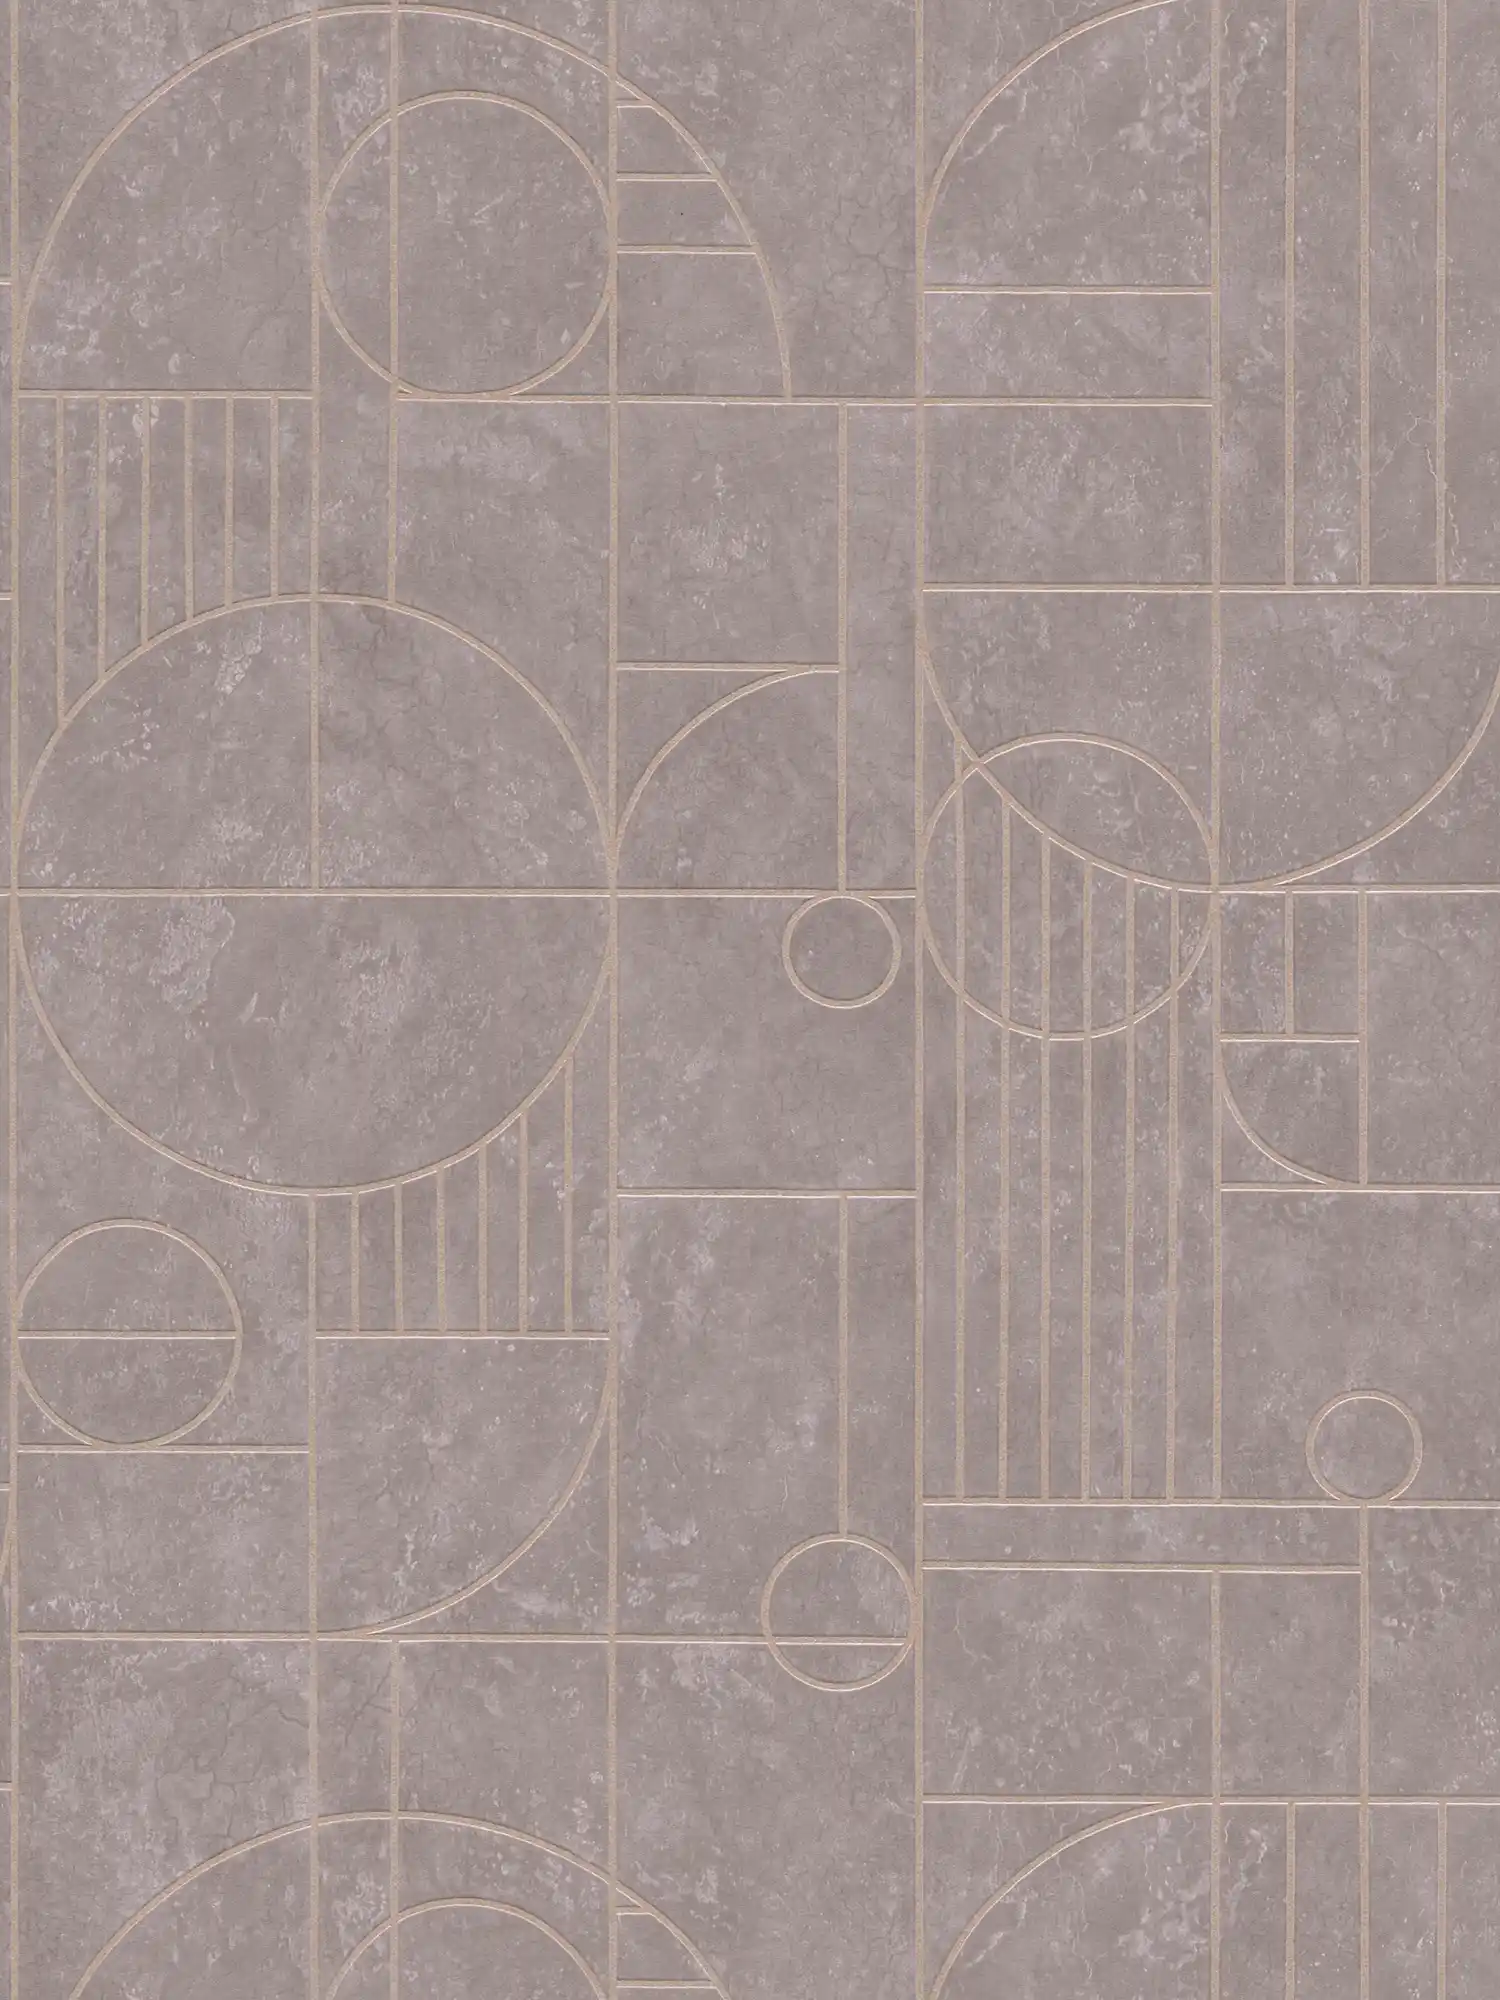             Tile look wallpaper art deco design marbled - grey, metallic
        